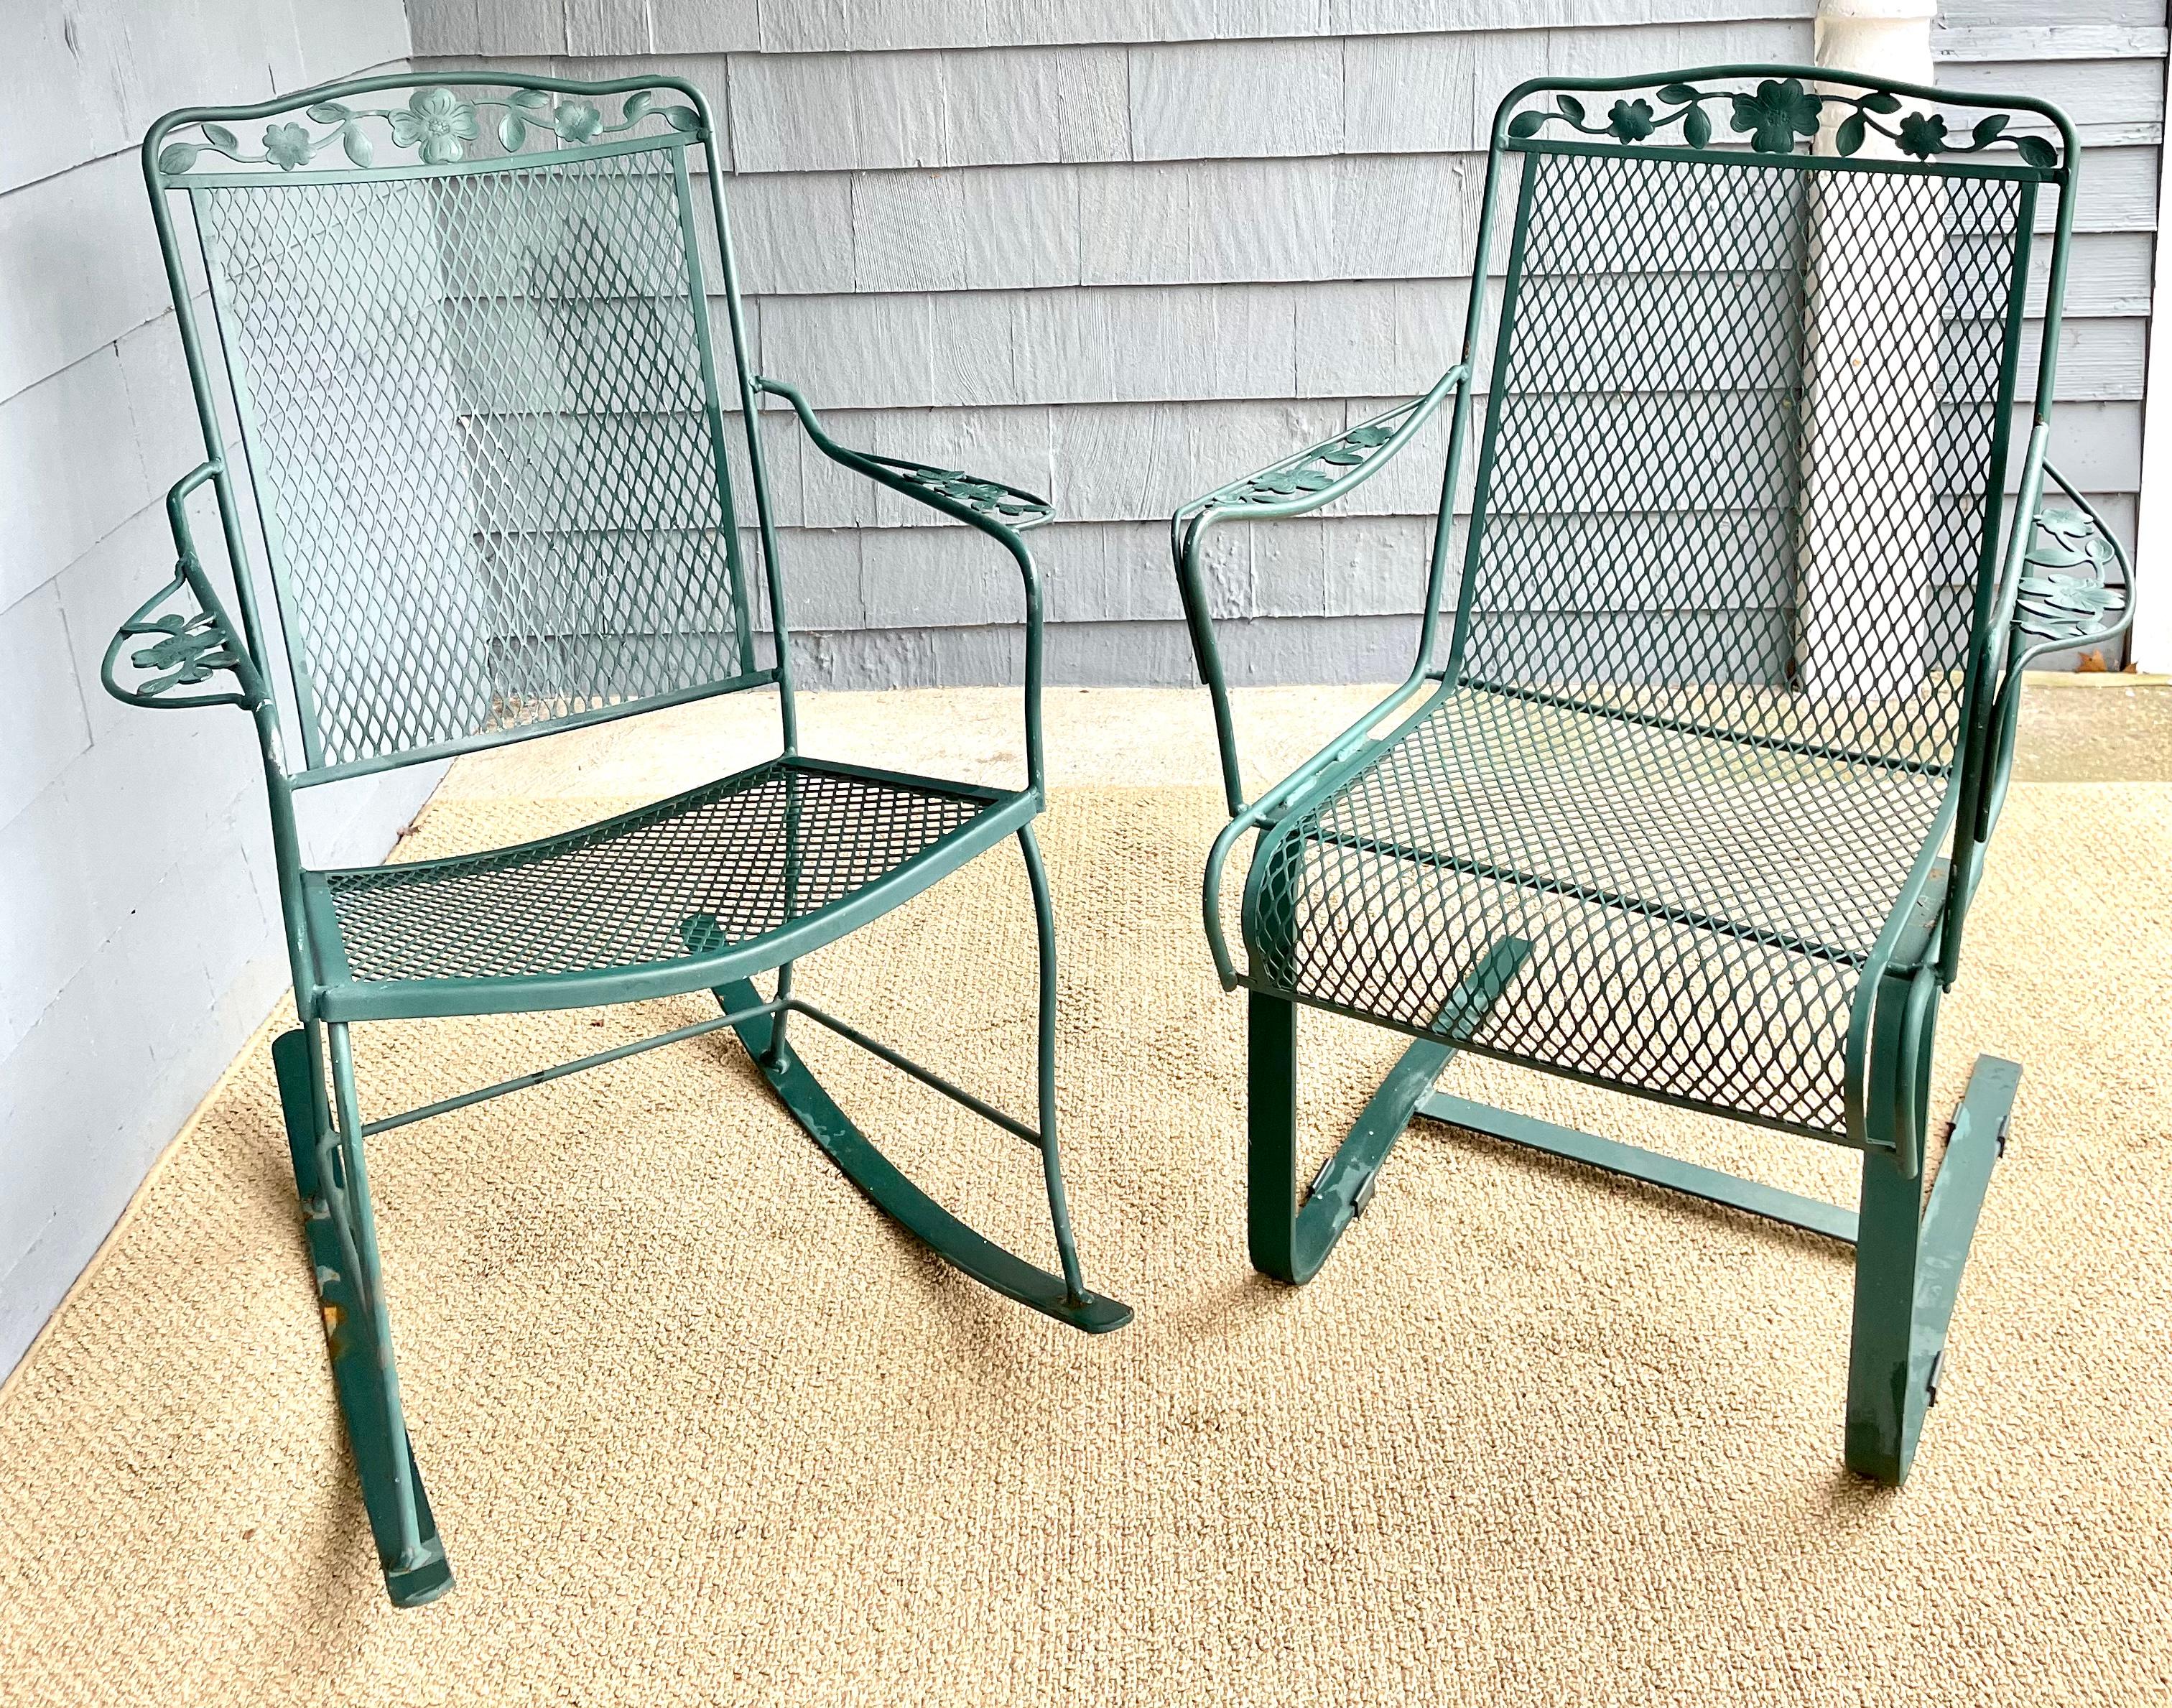 Disponible maintenant et prêt à être expédié pour votre plaisir est une paire de chaises de patio en fer forgé pour l'extérieur. Cette paire de chaises de patio en fer forgé durable durera des décennies car elle est fabriquée en fer forgé lourd. Le